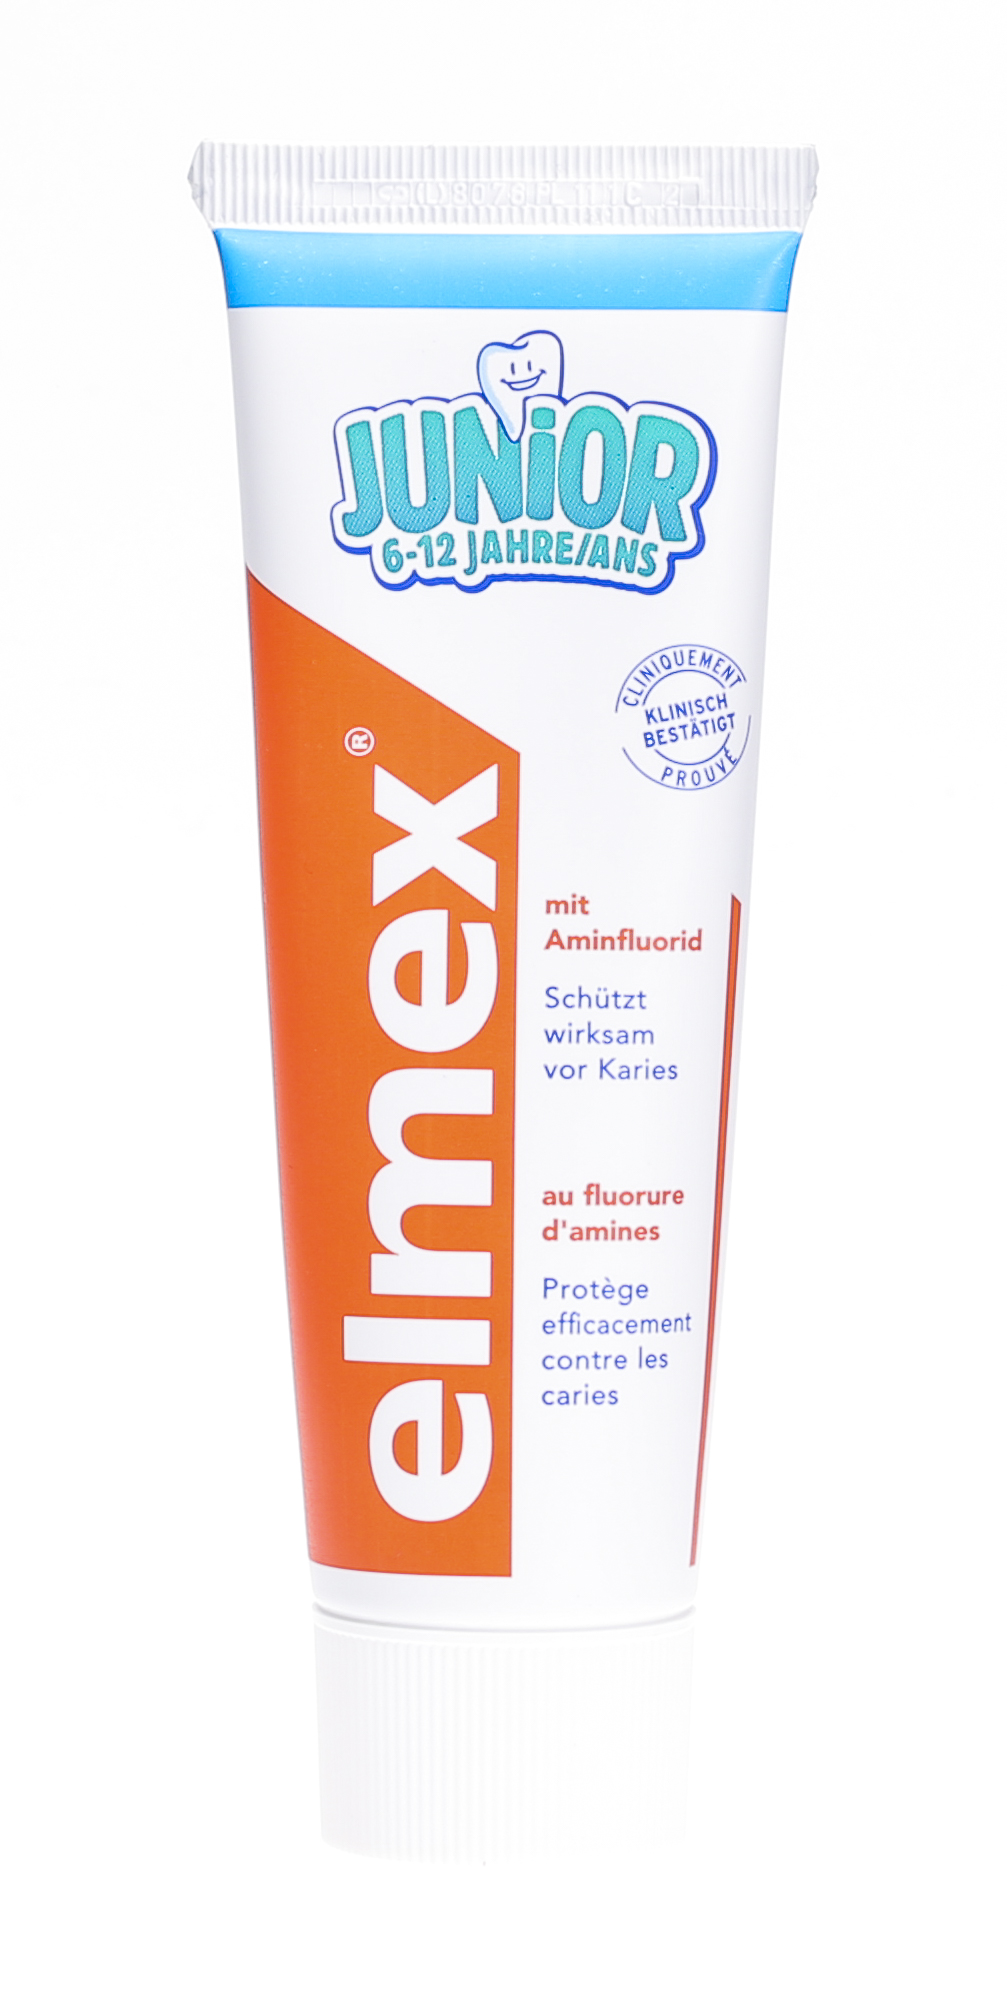 Elmex Junior dentifricio, a base di fluoruro di ammina, è adatto per bambini  dai 6 ai 12 anni.